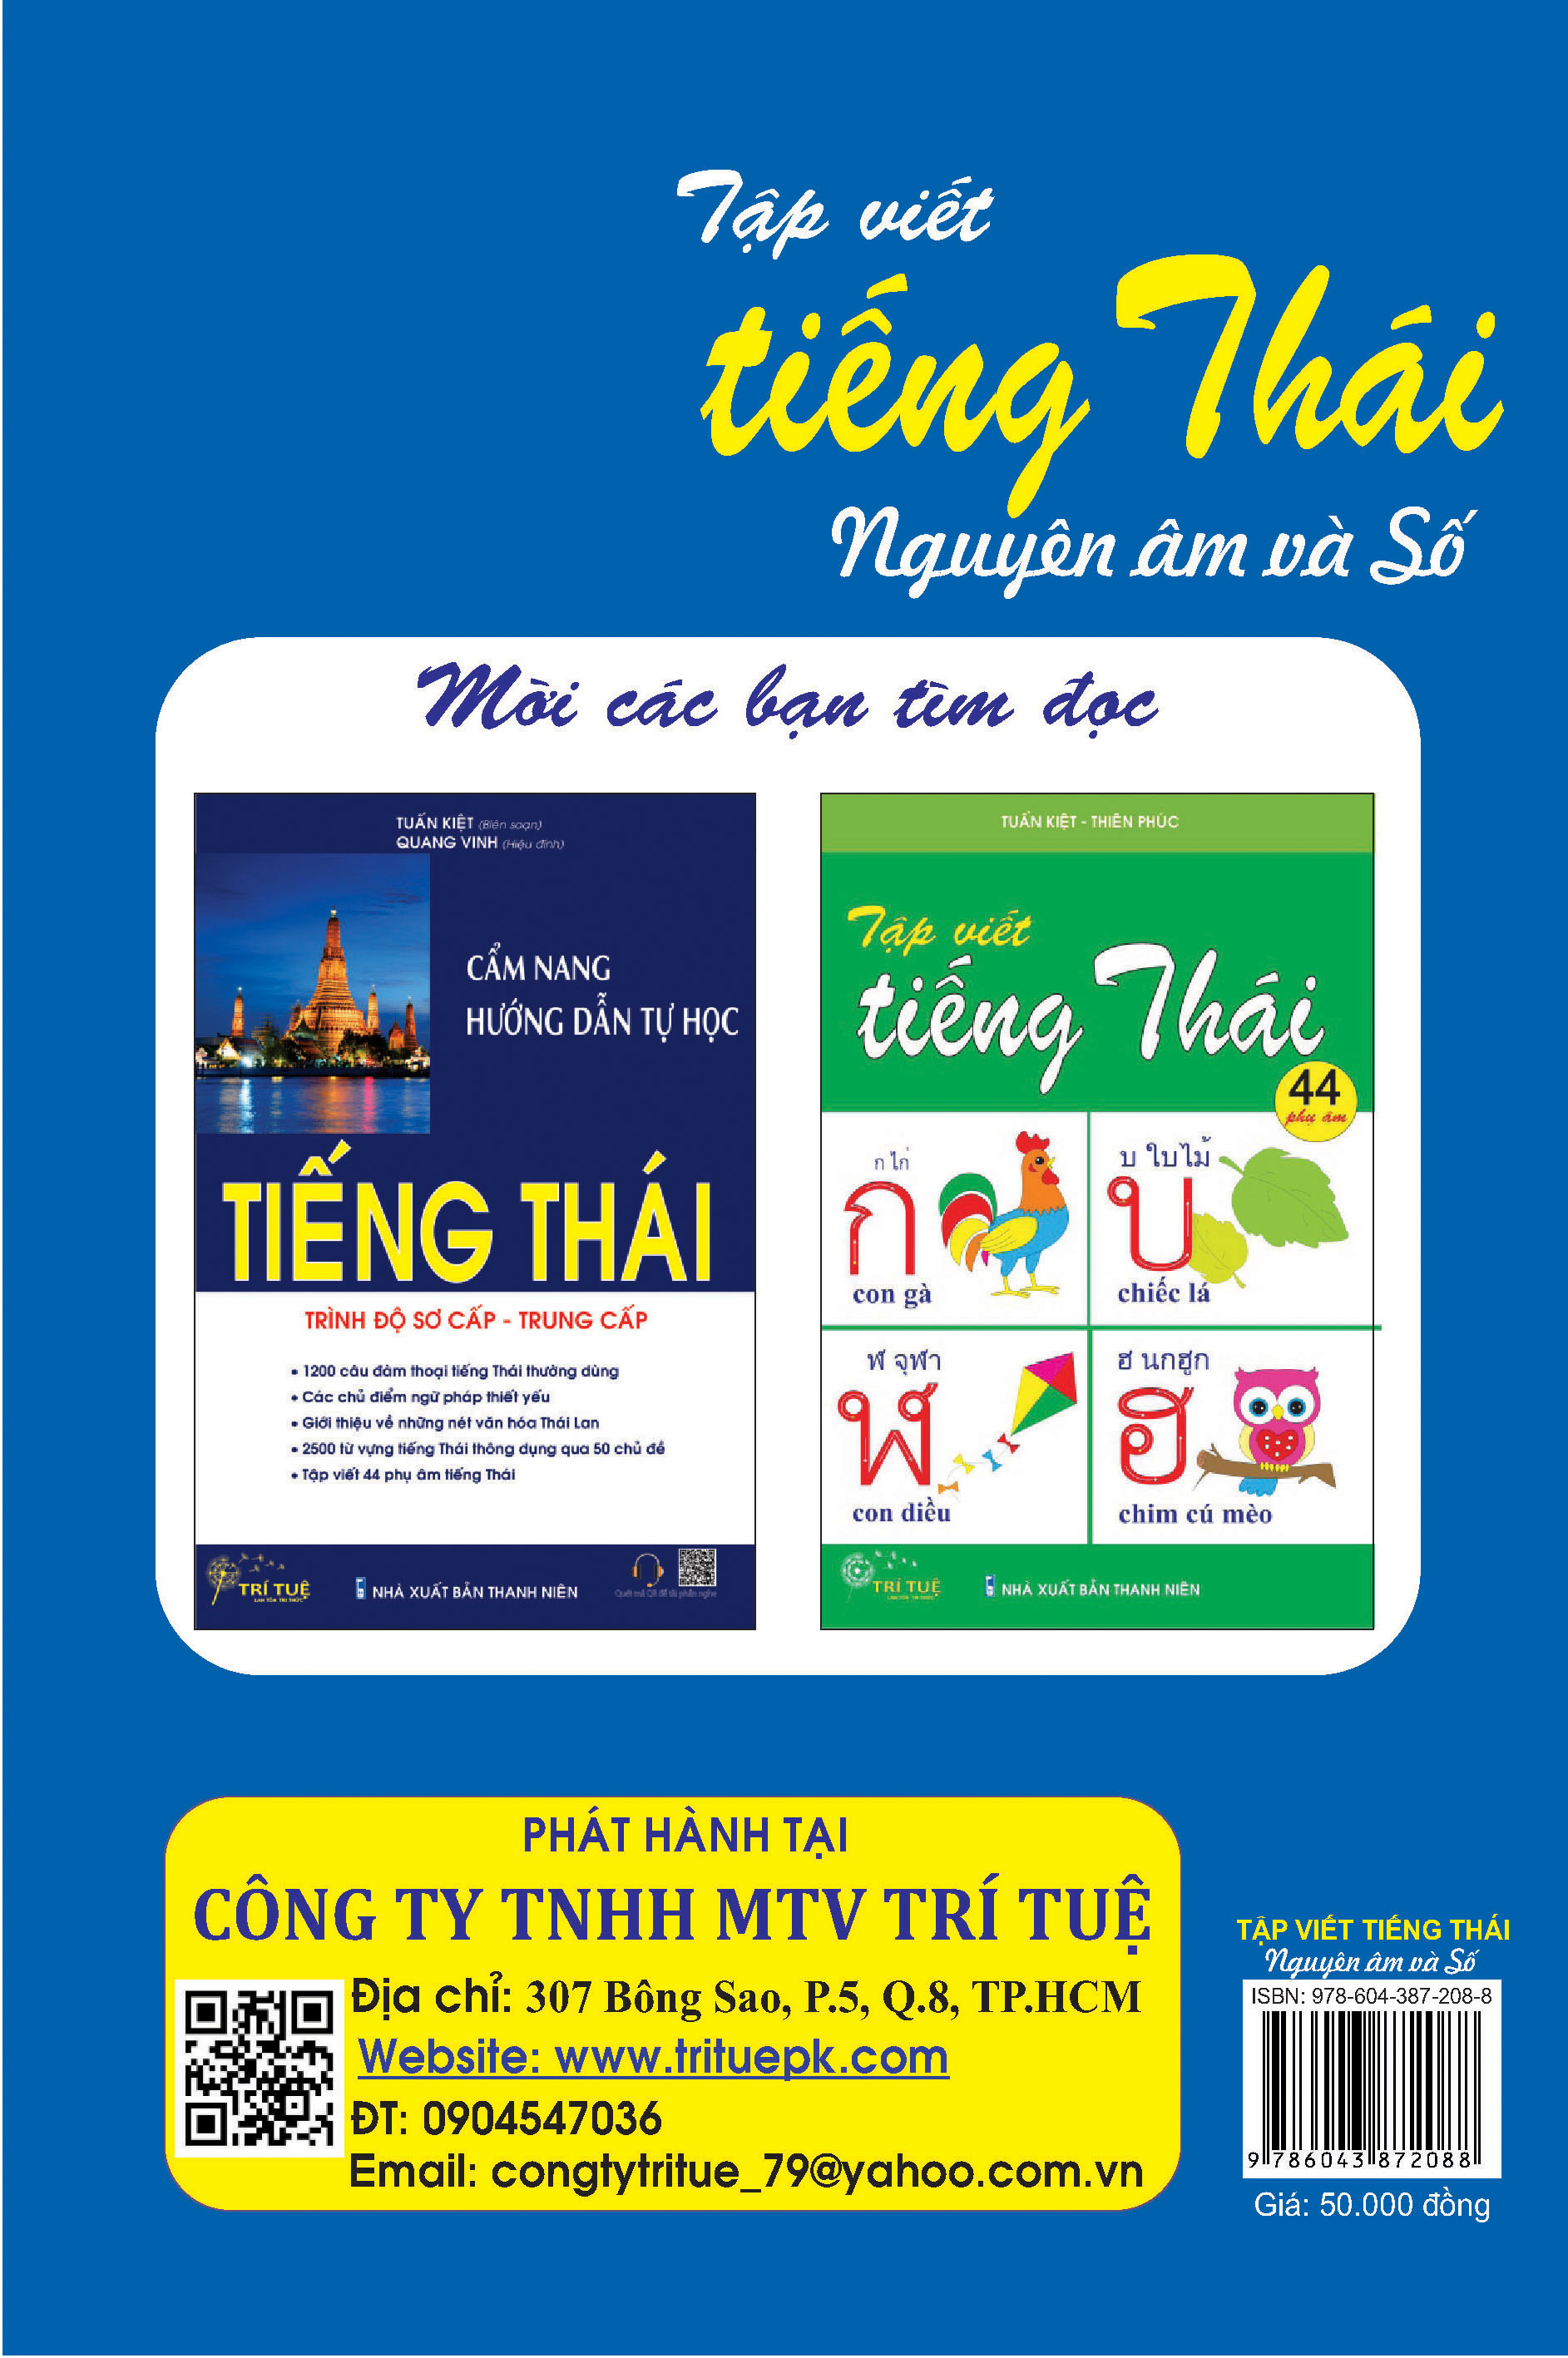 Combo Học Tiếng Thái - Cẩm Nang Hướng Dẫn Tự Học Tiếng Thái (Trình Độ Sơ Cấp - Trung Cấp) + Tập Viết Tiếng Thái - Nguyên Âm Và Số + 44 Phụ Âm